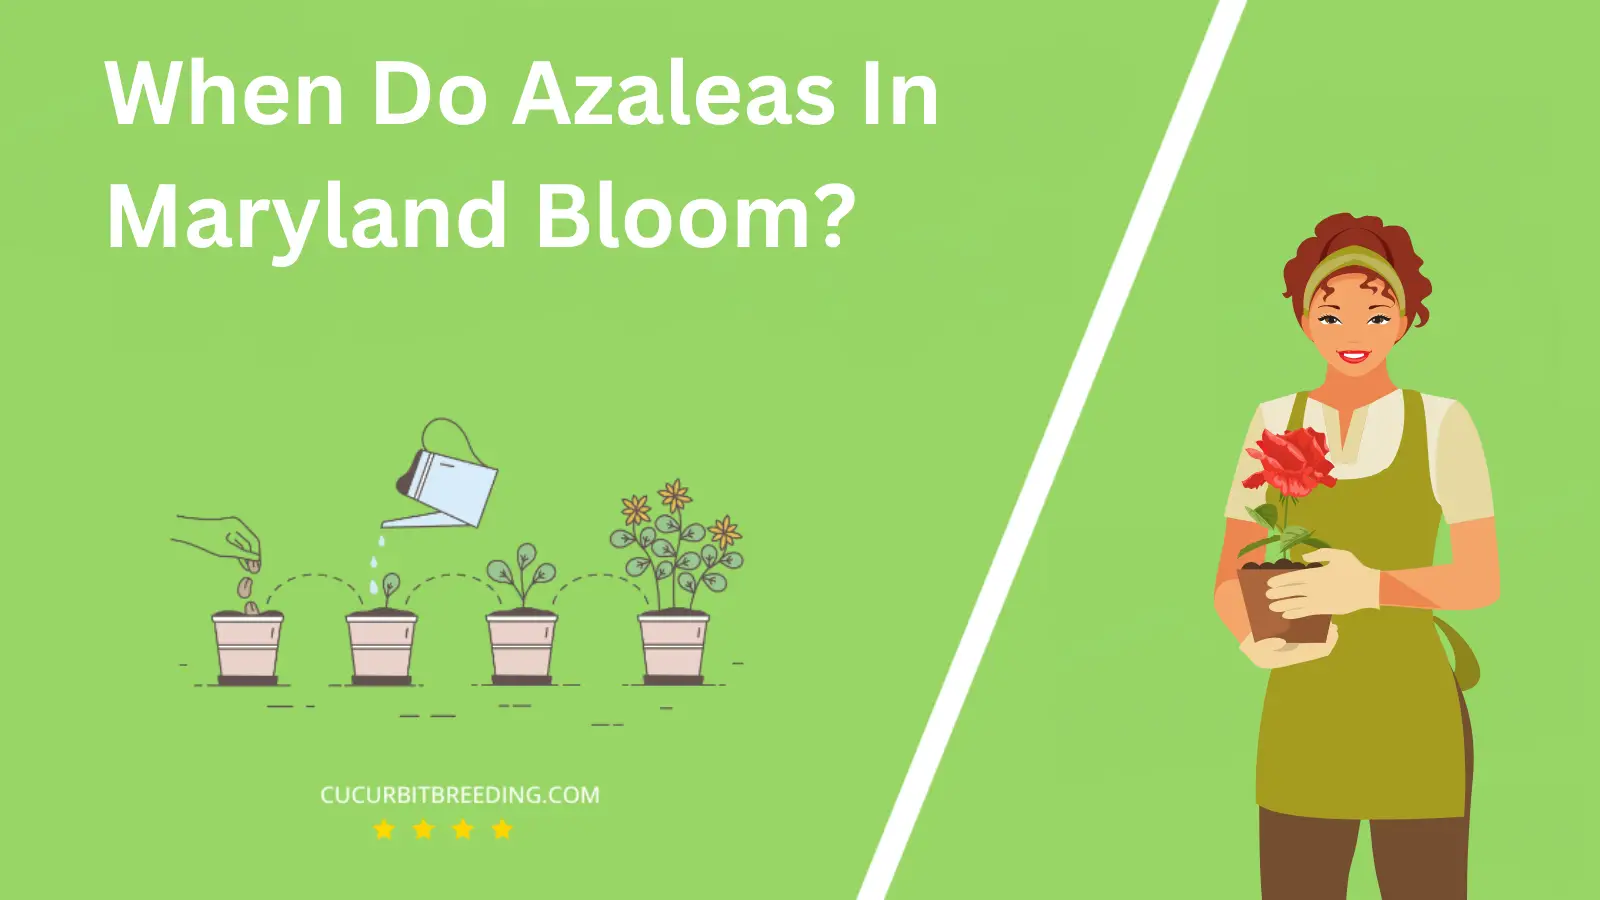 When Do Azaleas In Maryland Bloom?